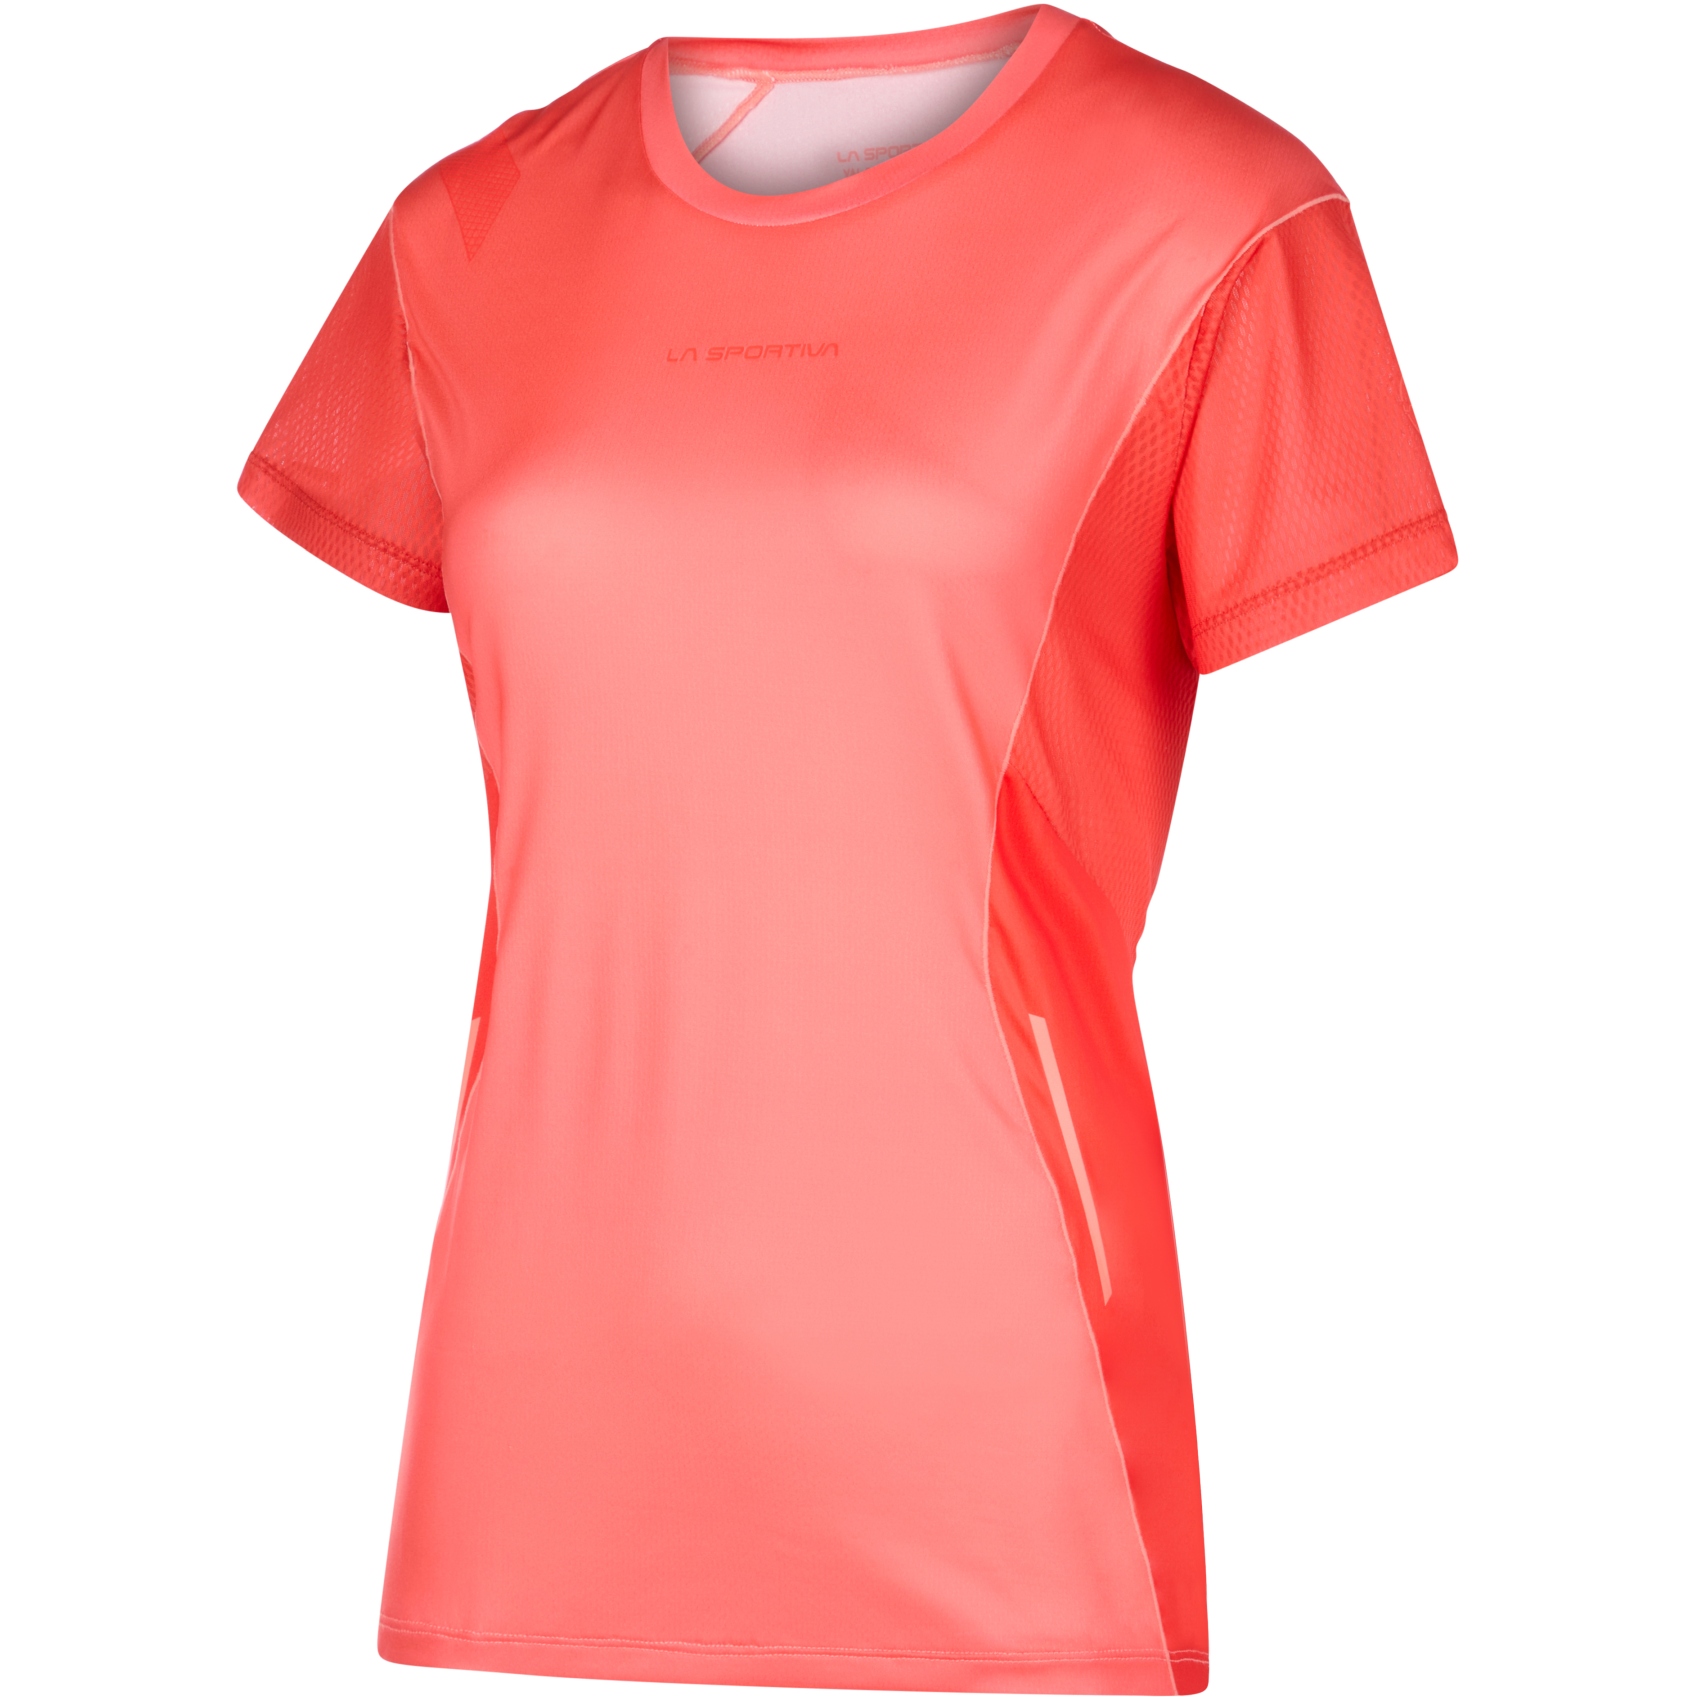 Produktbild von La Sportiva Resolute T-Shirt Damen - Flamingo/Cherry Tomato